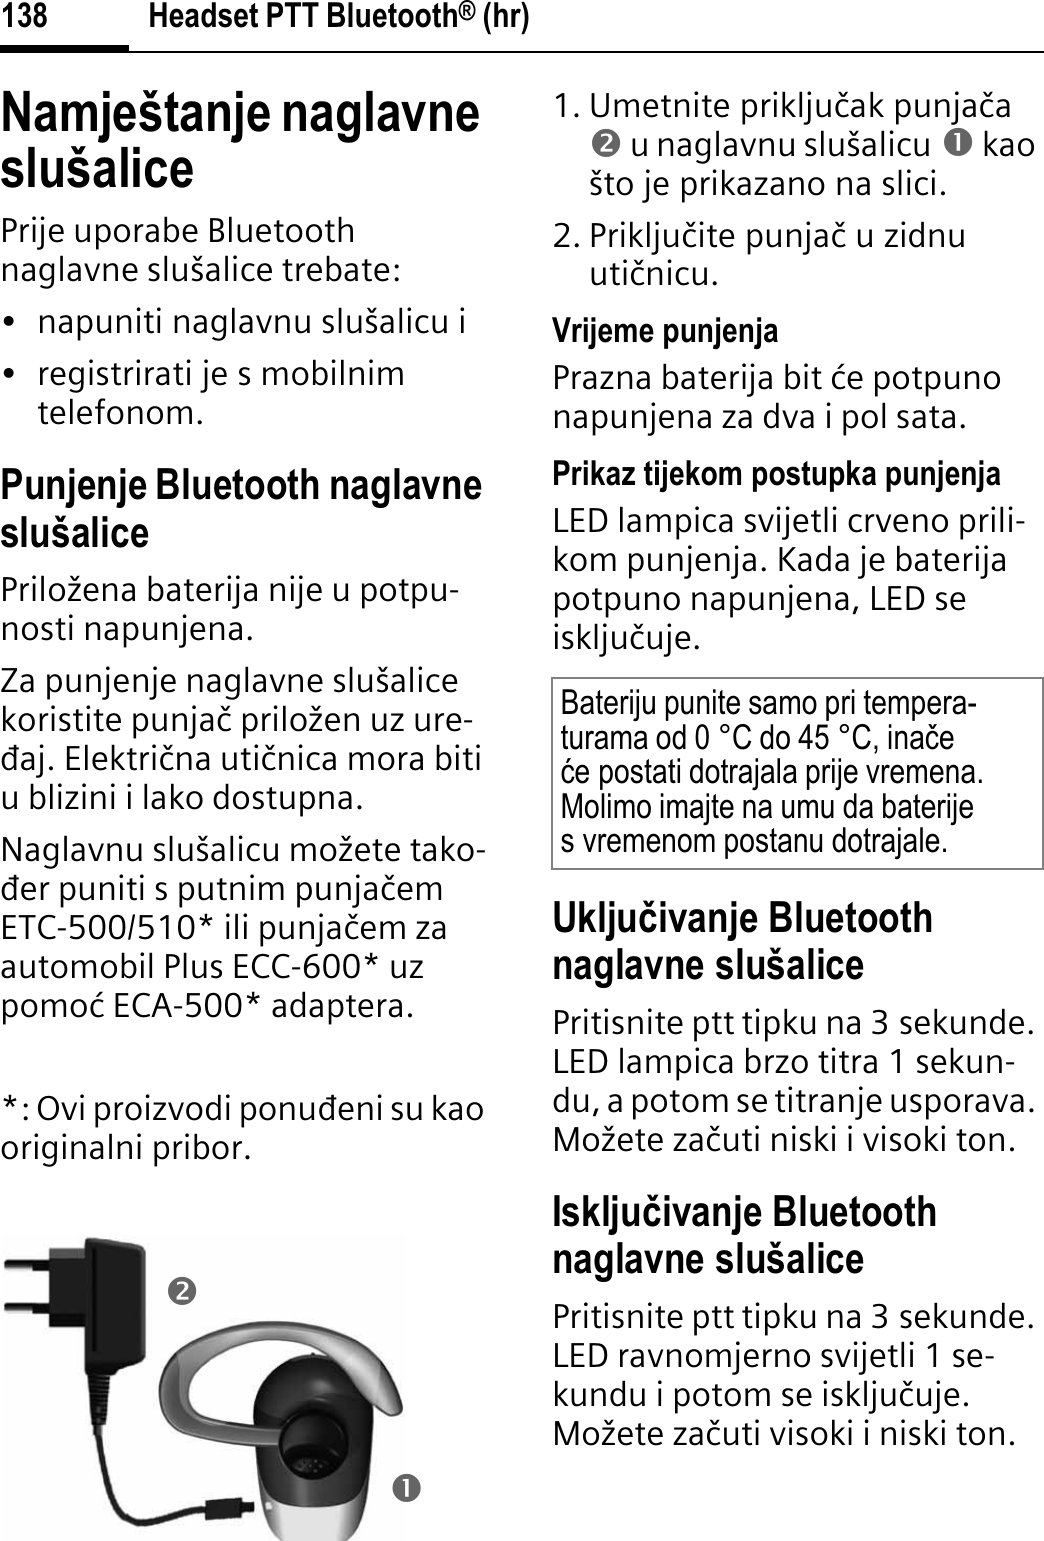 Headset PTT Bluetooth® (hr)138Namještanje naglavne slušalicePrije uporabe Bluetooth naglavne slušalice trebate:• napuniti naglavnu slušalicu i• registrirati je s mobilnim telefonom.Punjenje Bluetooth naglavne slušalicePriložena baterija nije u potpu-nosti napunjena.Za punjenje naglavne slušalice koristite punjaþ priložen uz ure-āaj. Elektriþna utiþnica mora biti u blizini i lako dostupna.Naglavnu slušalicu možete tako-āer puniti s putnim punjaþemETC-500/510* ili punjaþem za automobil Plus ECC-600* uz pomoø ECA-500* adaptera.*: Ovi proizvodi ponuāeni su kao originalni pribor.1. Umetnite prikljuþak punjaþao u naglavnu slušalicu n kao što je prikazano na slici.2. Prikljuþite punjaþ u zidnu utiþnicu. Vrijeme punjenjaPrazna baterija bit øe potpuno napunjena za dva i pol sata.Prikaz tijekom postupka punjenjaLED lampica svijetli crveno prili-kom punjenja. Kada je baterija potpuno napunjena, LED se iskljuþuje.Ukljuÿivanje Bluetooth naglavne slušalicePritisnite ptt tipku na 3 sekunde. LED lampica brzo titra 1 sekun-du, a potom se titranje usporava. Možete zaþuti niski i visoki ton.Iskljuÿivanje Bluetooth naglavne slušalicePritisnite ptt tipku na 3 sekunde. LED ravnomjerno svijetli 1 se-kundu i potom se iskljuþuje. Možete zaþuti visoki i niski ton.onBateriju punite samo pri tempera-turama od 0 °C do 45 °C, inaþeüe postati dotrajala prije vremena. Molimo imajte na umu da baterije s vremenom postanu dotrajale.